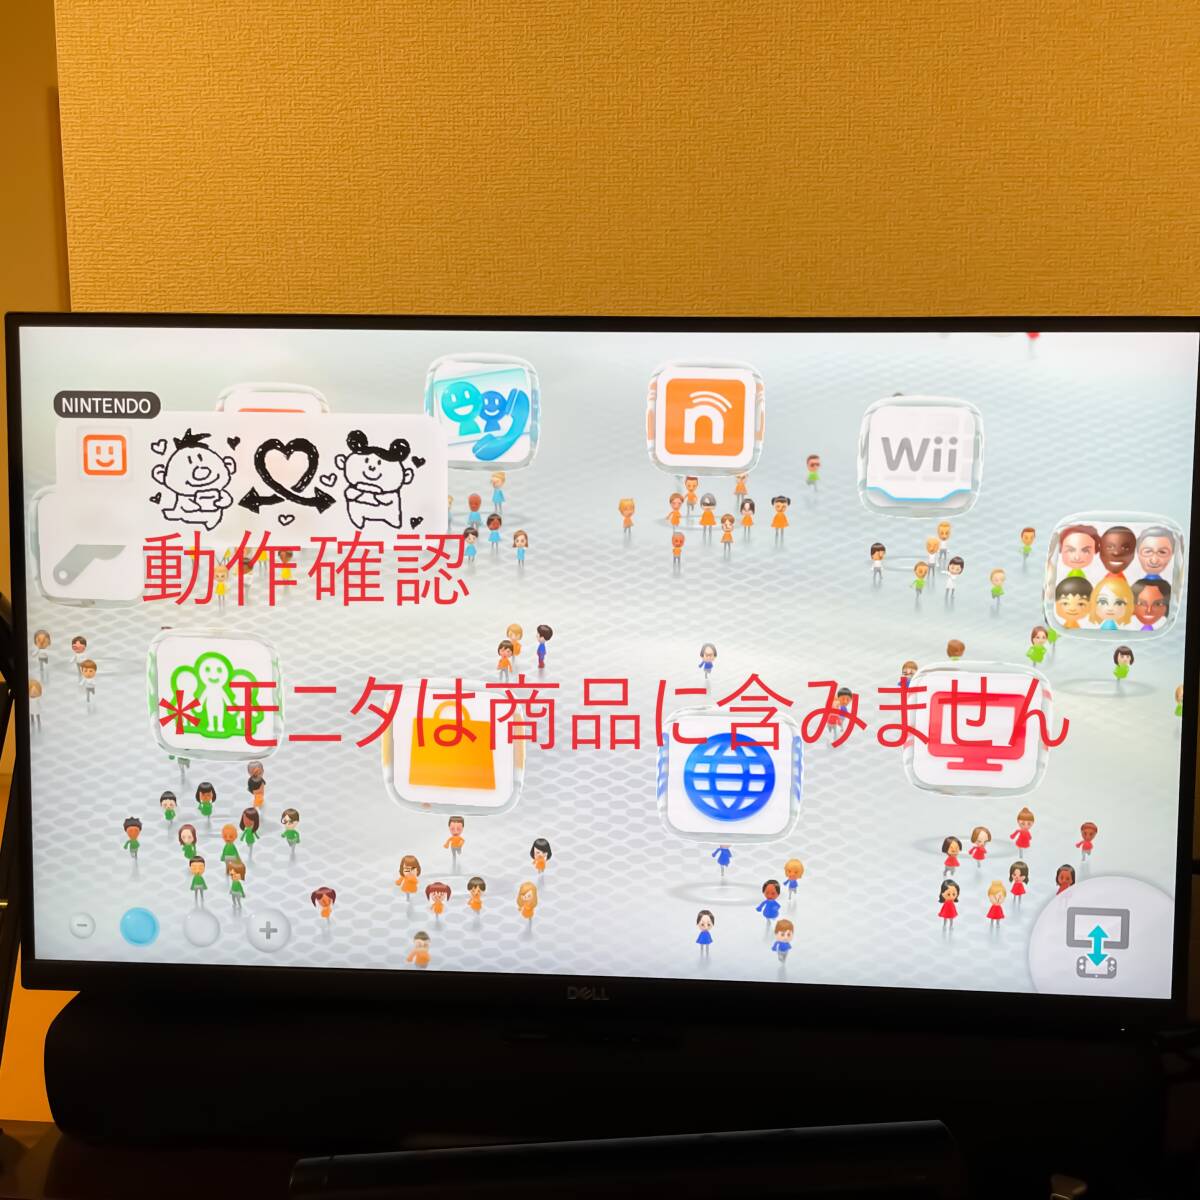 Wii U корпус zeno Blade Cross комплект рабочее состояние подтверждено 